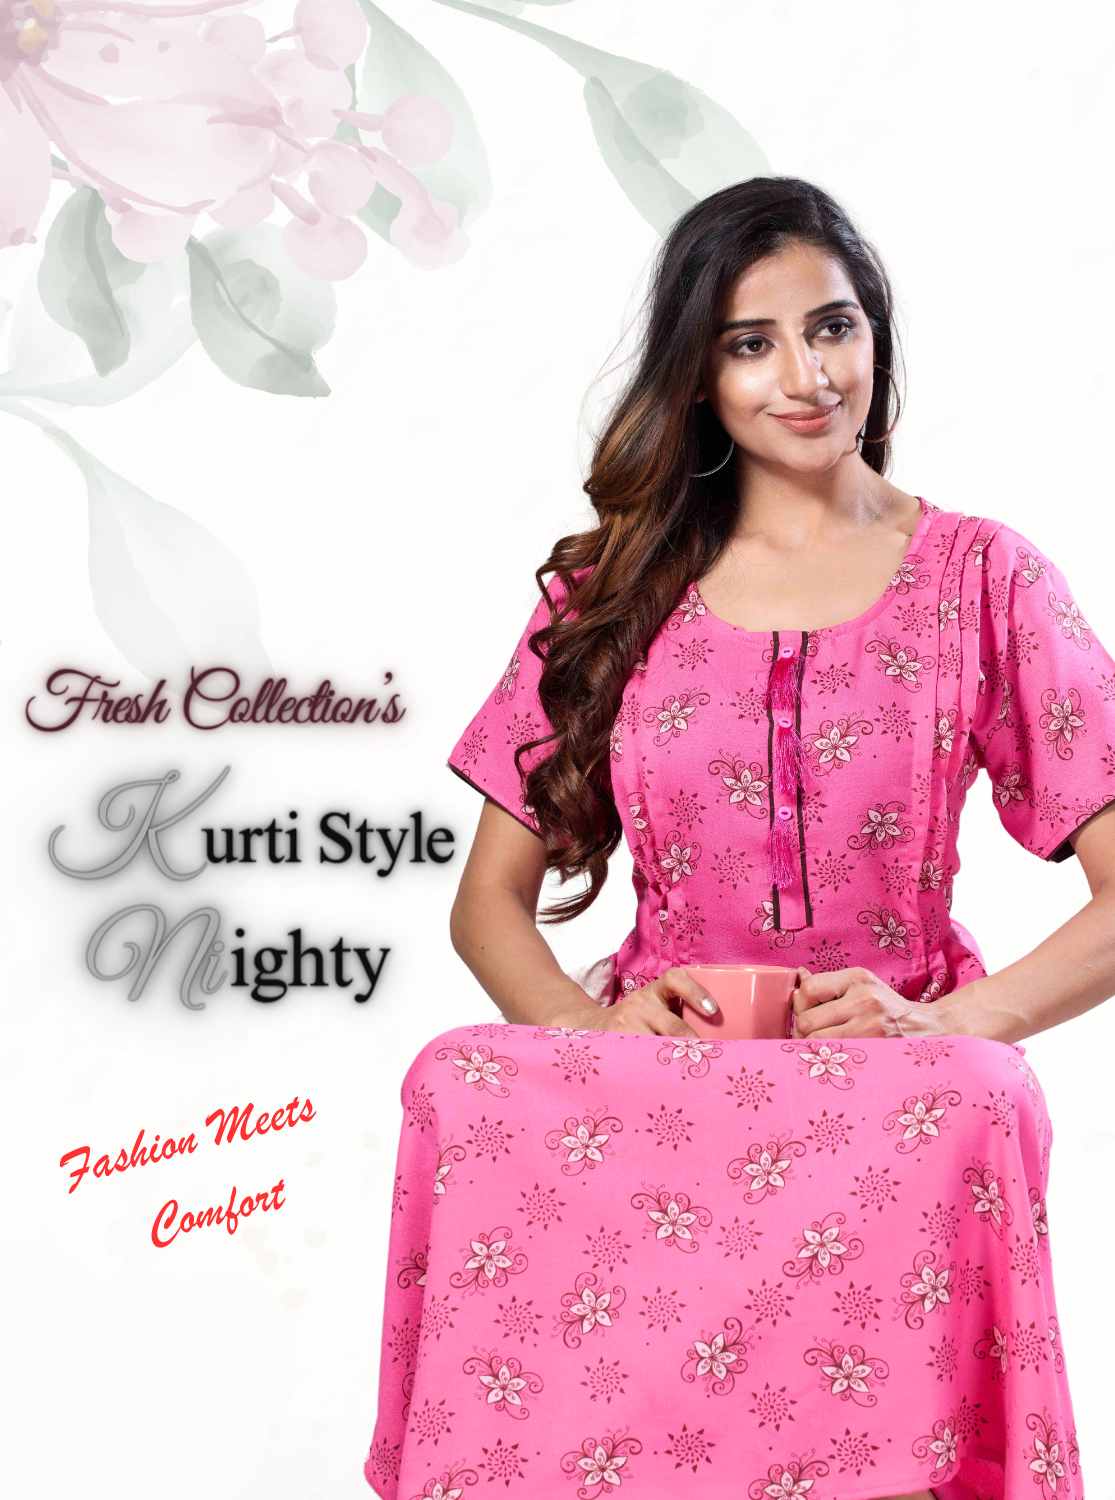 Fresh MANGAI New Soft Alpine KURTI Style | Beautiful Stylish KURTI Model | Half Sleeve |Fresh Arrivals for Stylish Women's